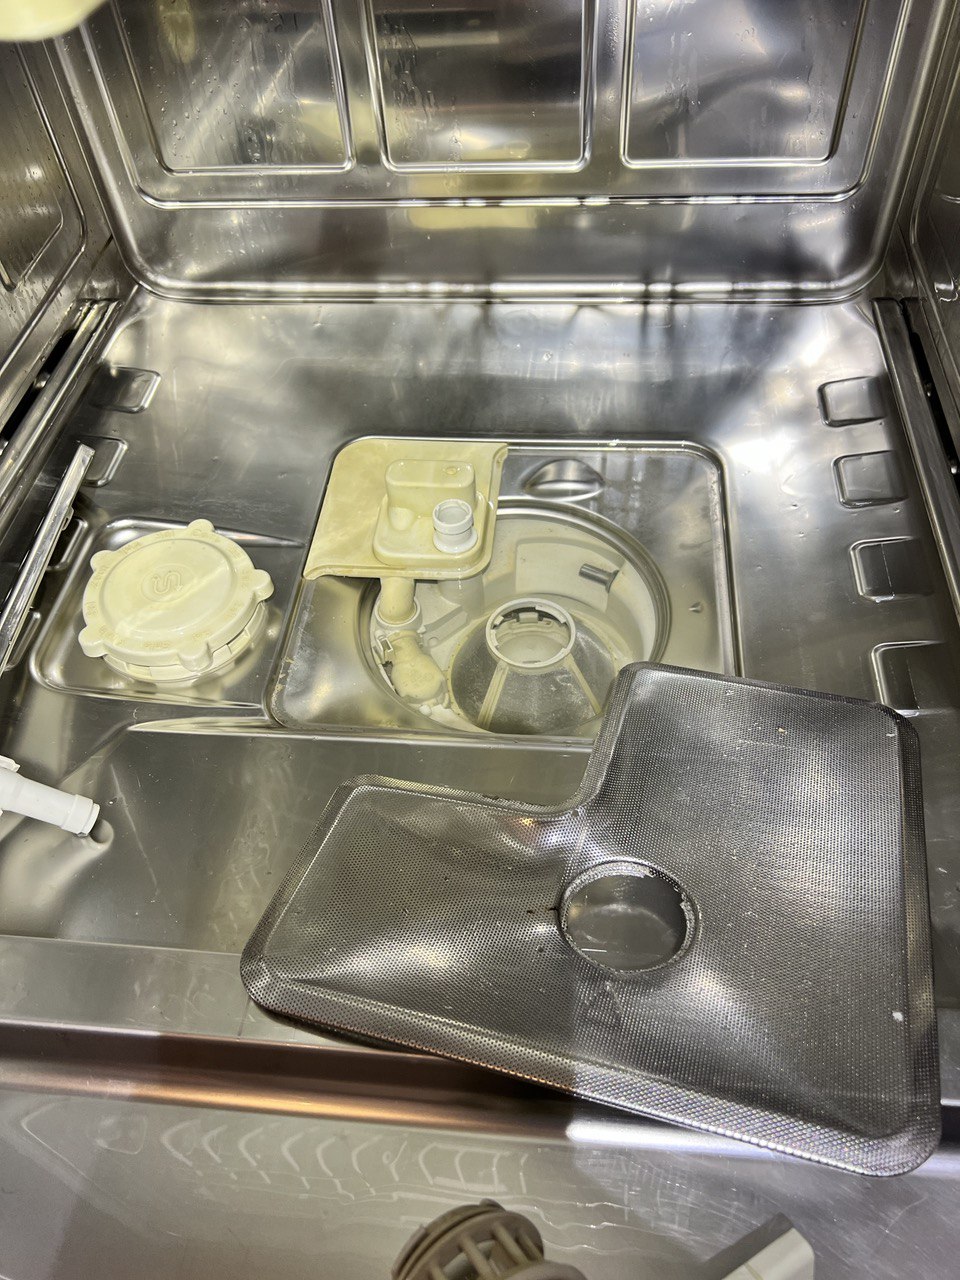 Dishwasher Miele Repair Dishwasher Repair